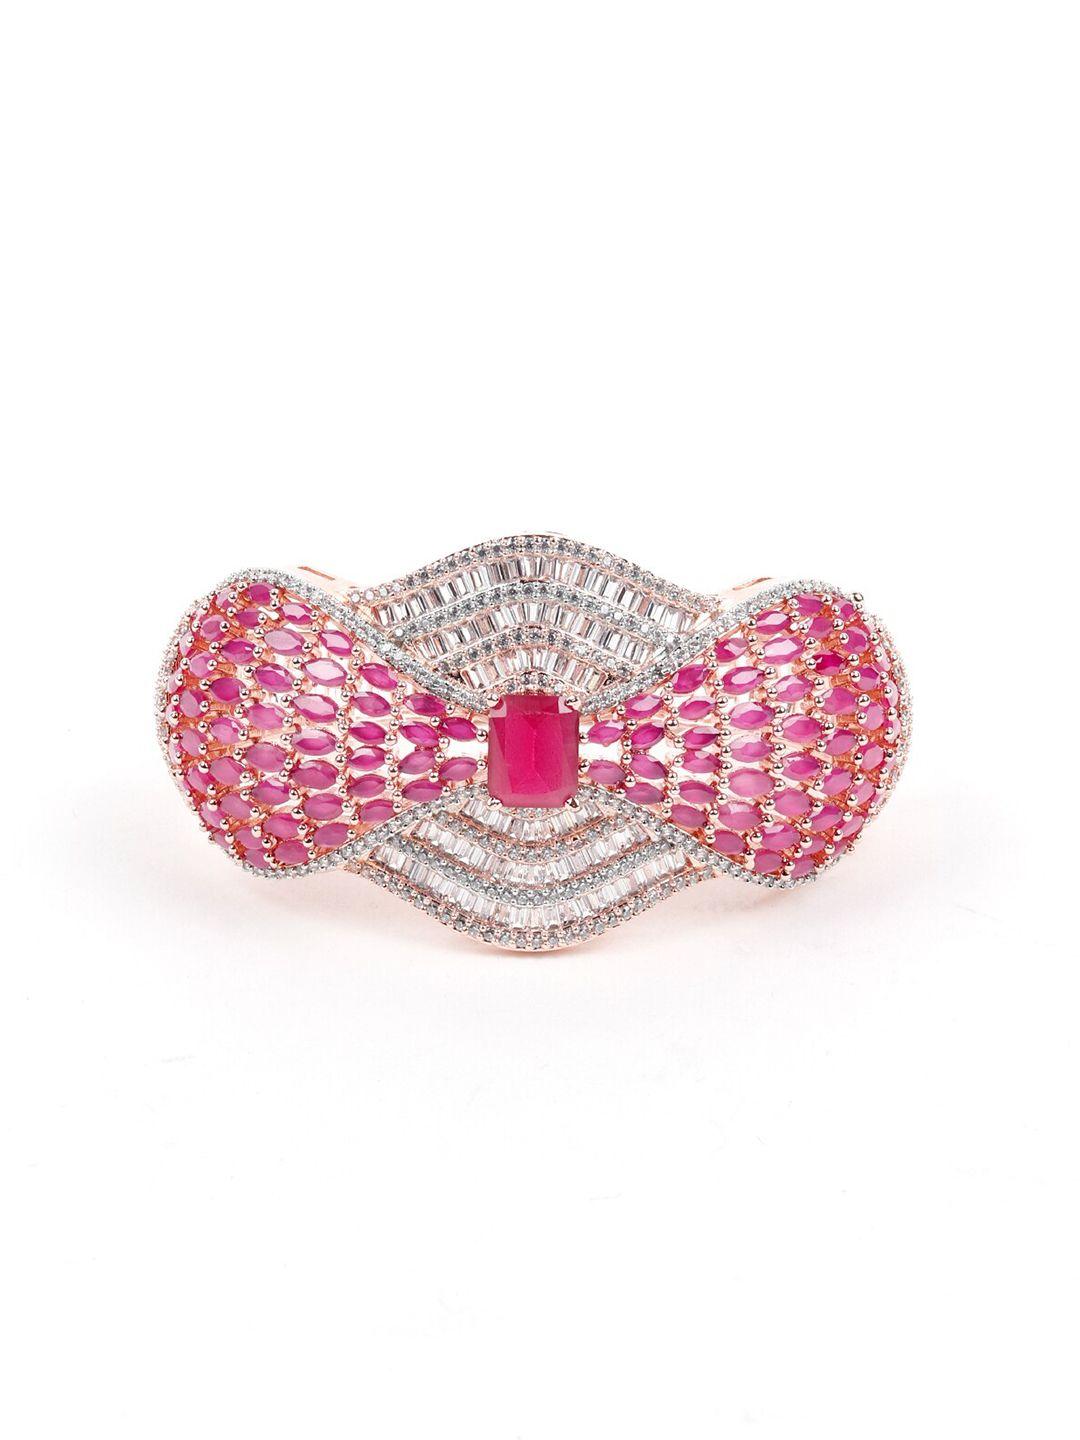 odette women pink & white stone studded bangle style bracelet